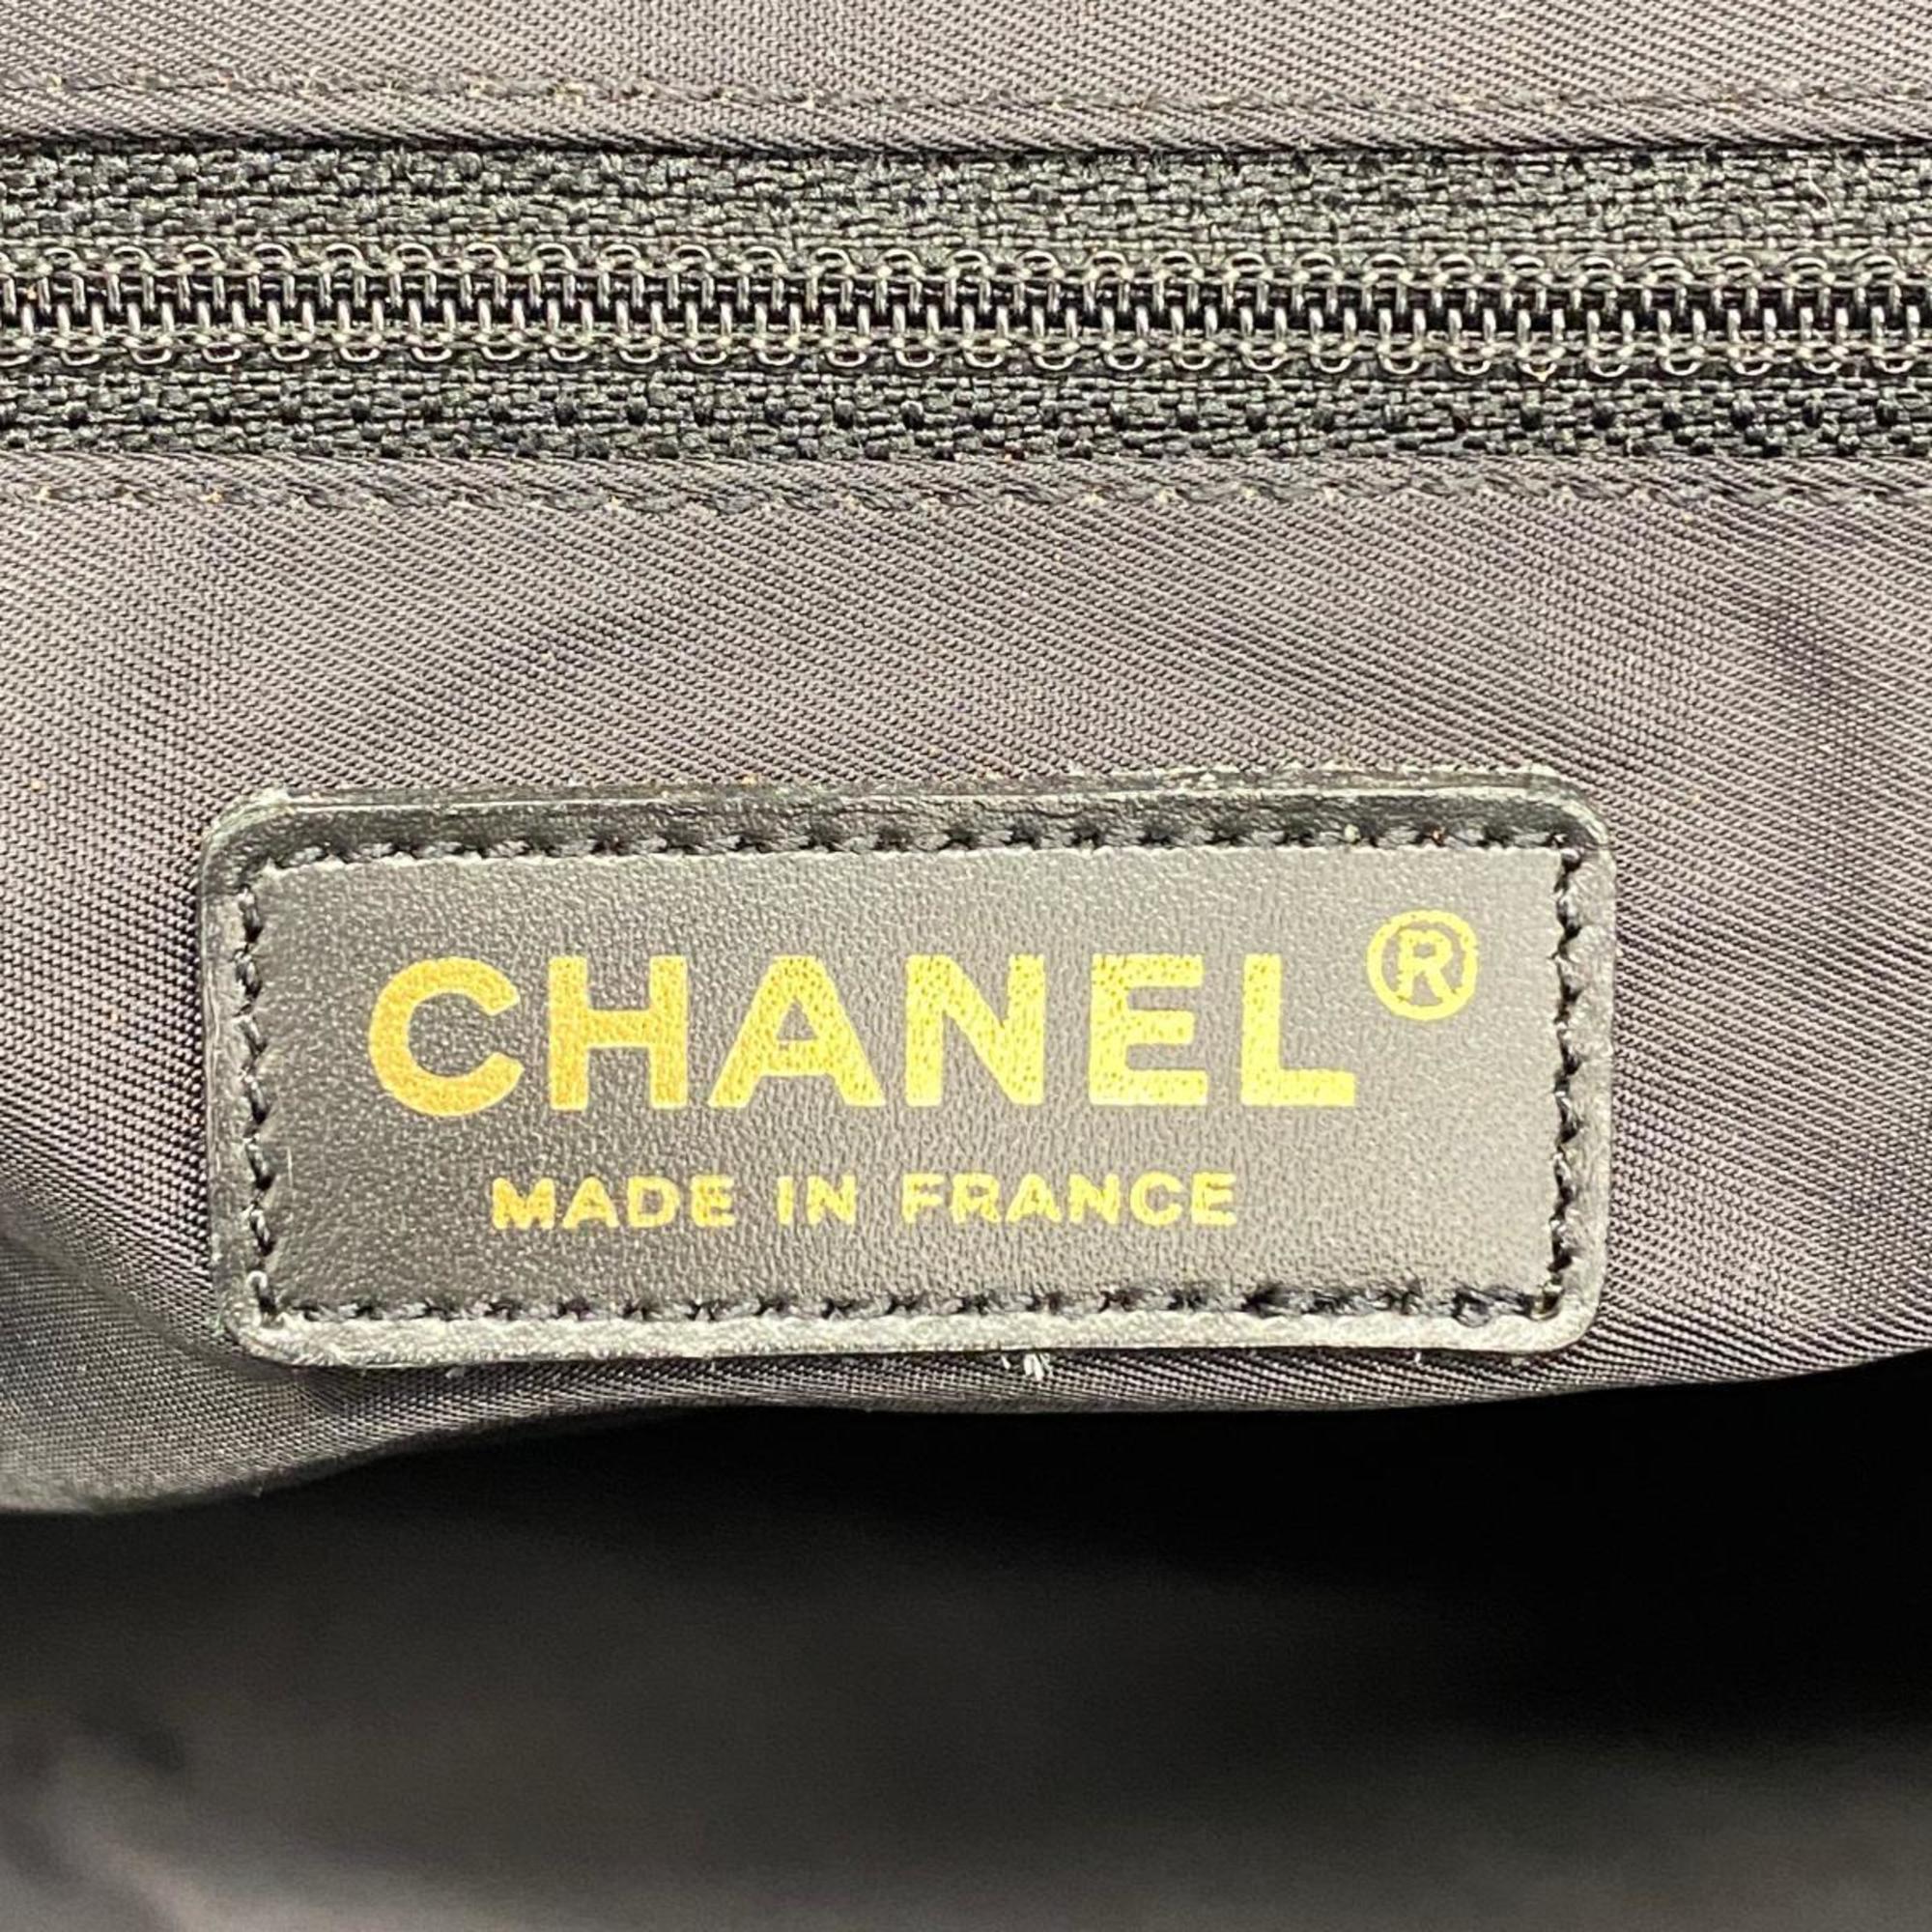 シャネル(Chanel) シャネル トートバッグ ニュートラベル ナイロン ブラック  レディース